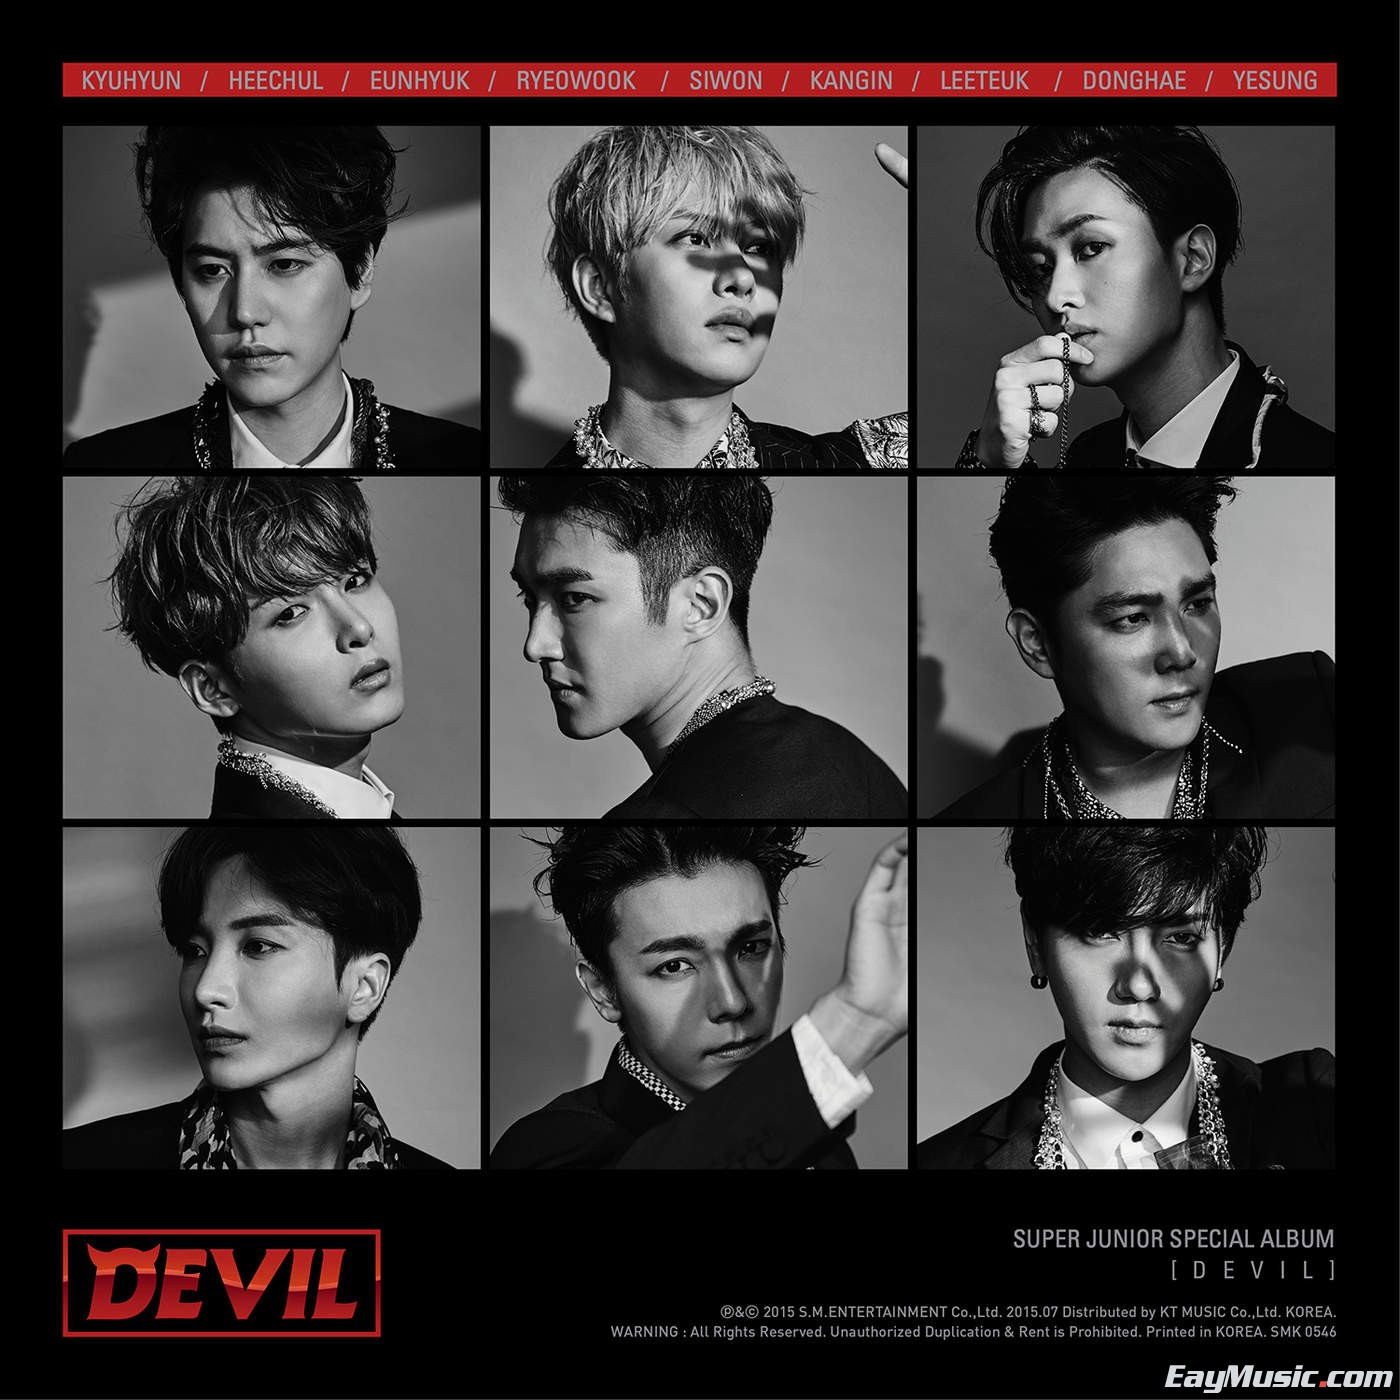 super junior - devil - super junior special album